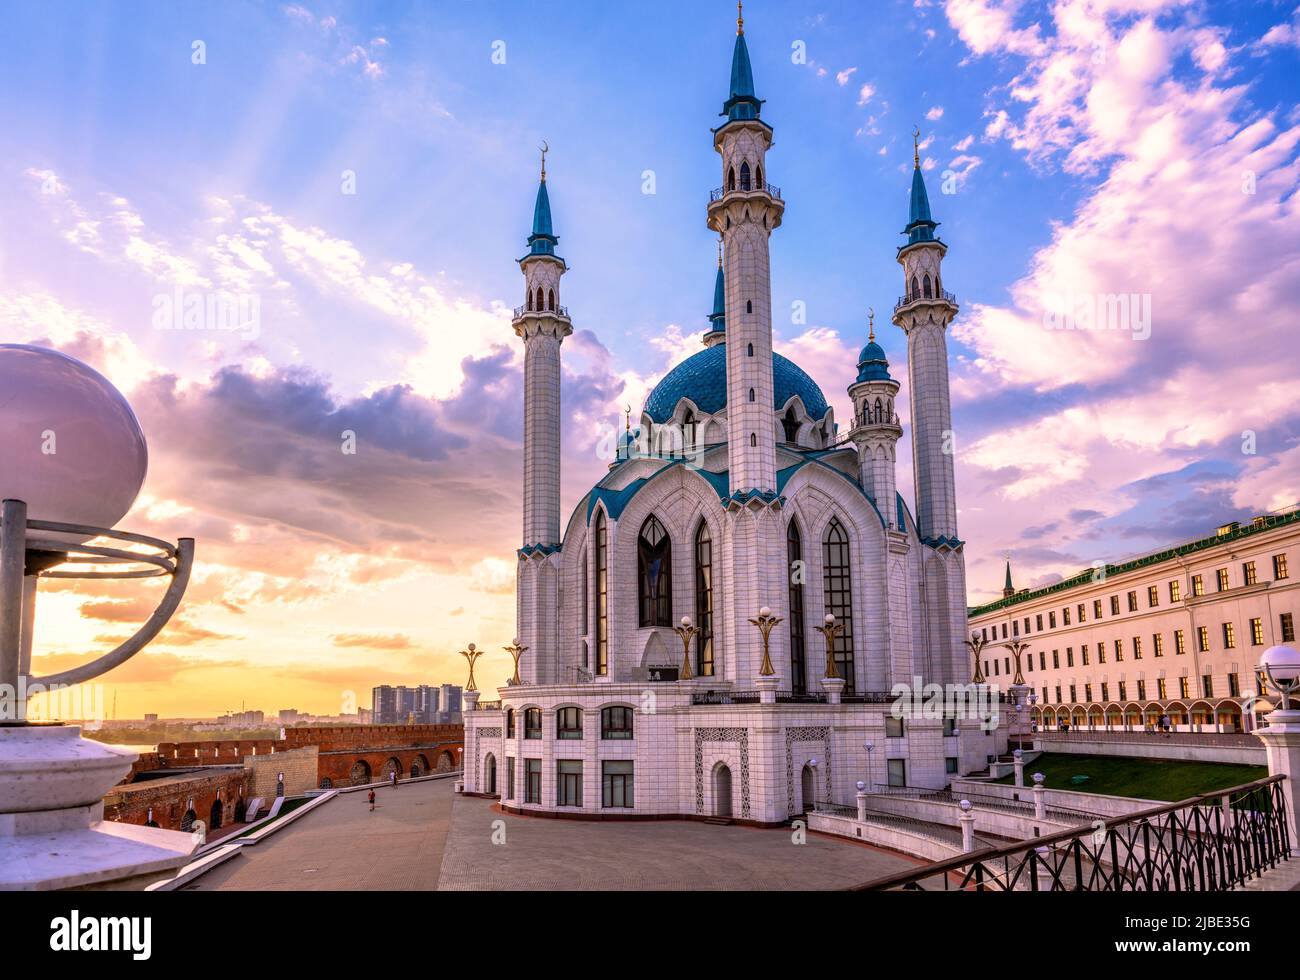 Cremlino di Kazan, Tatarstan, Russia. Bella vista della moschea di Kul Sharif, punto di riferimento di Kazan in estate. Edificio islamico al tramonto nel centro della città di Kazan. Concep Foto Stock